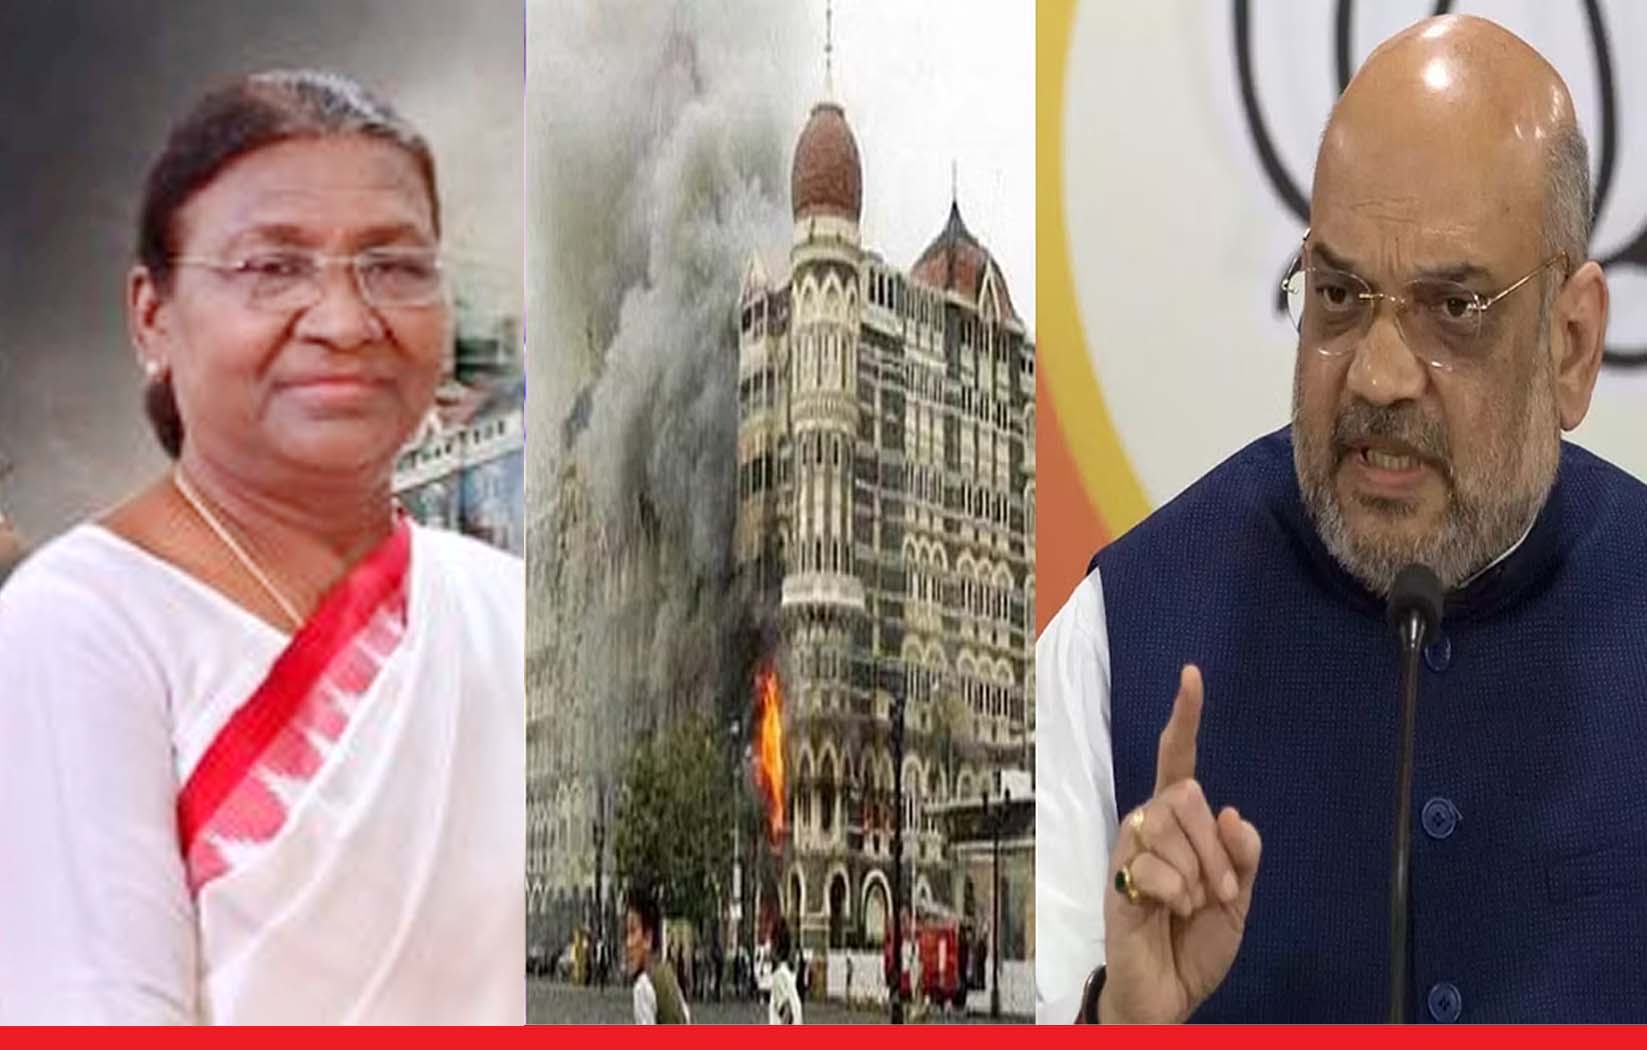 26/11 Attack: मुंबई आतंकी हमले की 14वीं बरसी आज, राष्ट्रपति समेत कई नेताओं ने शहीदों को किया याद